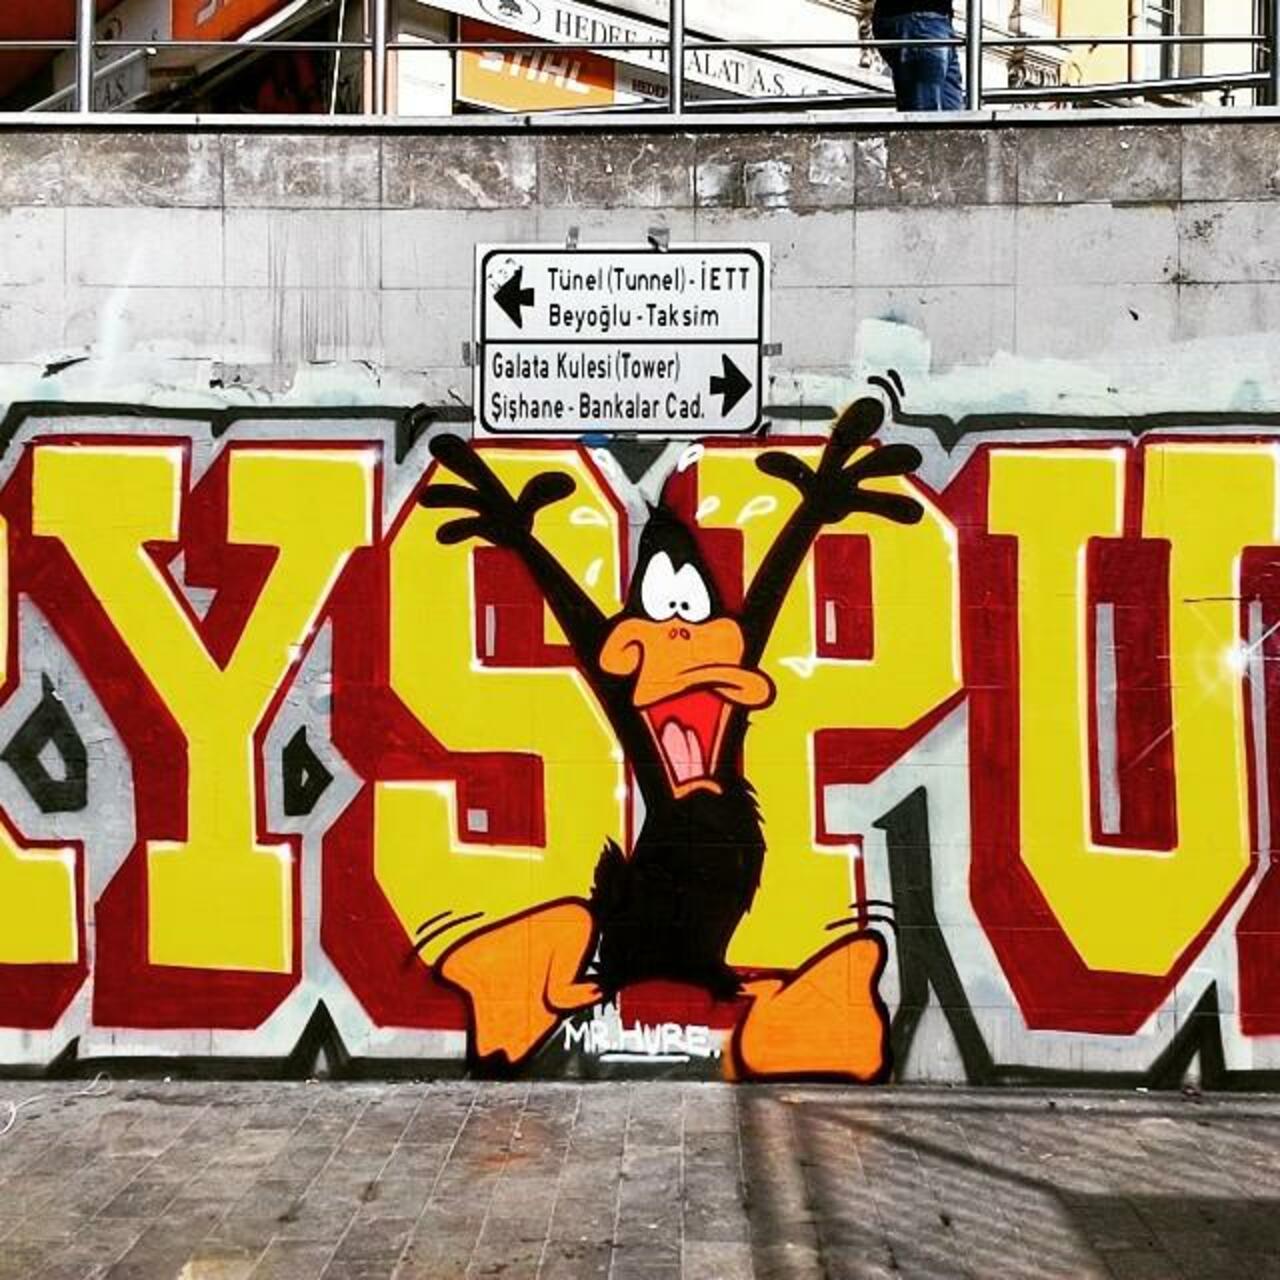 Şapşal.
250515
#daffyduck #streetartistanbul #streetart #street #art #graffiti #grafiti #urban #city #travel #mrhur… http://t.co/HzOFuhLppm